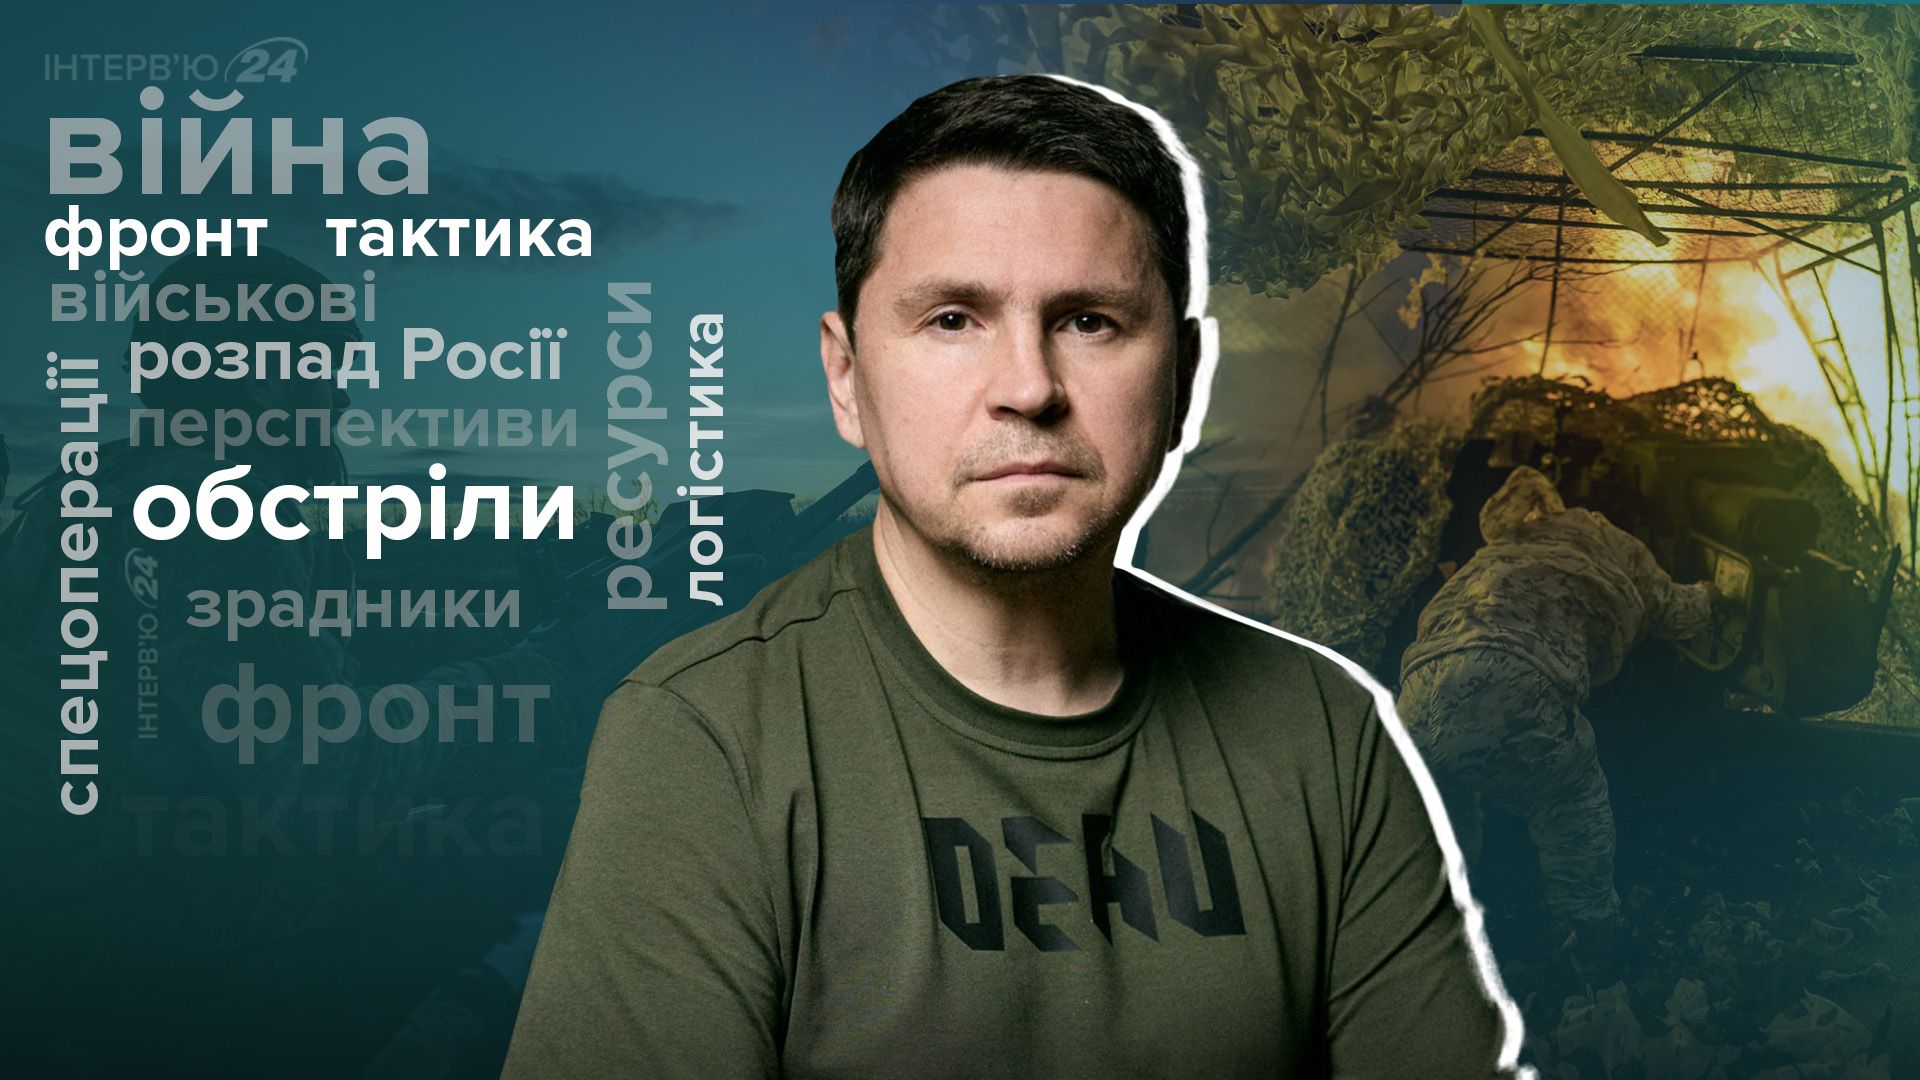 Проблемы на фронте - Илья Кива умер - что развалит Россию - интервью с Подоляком - 24 Канал